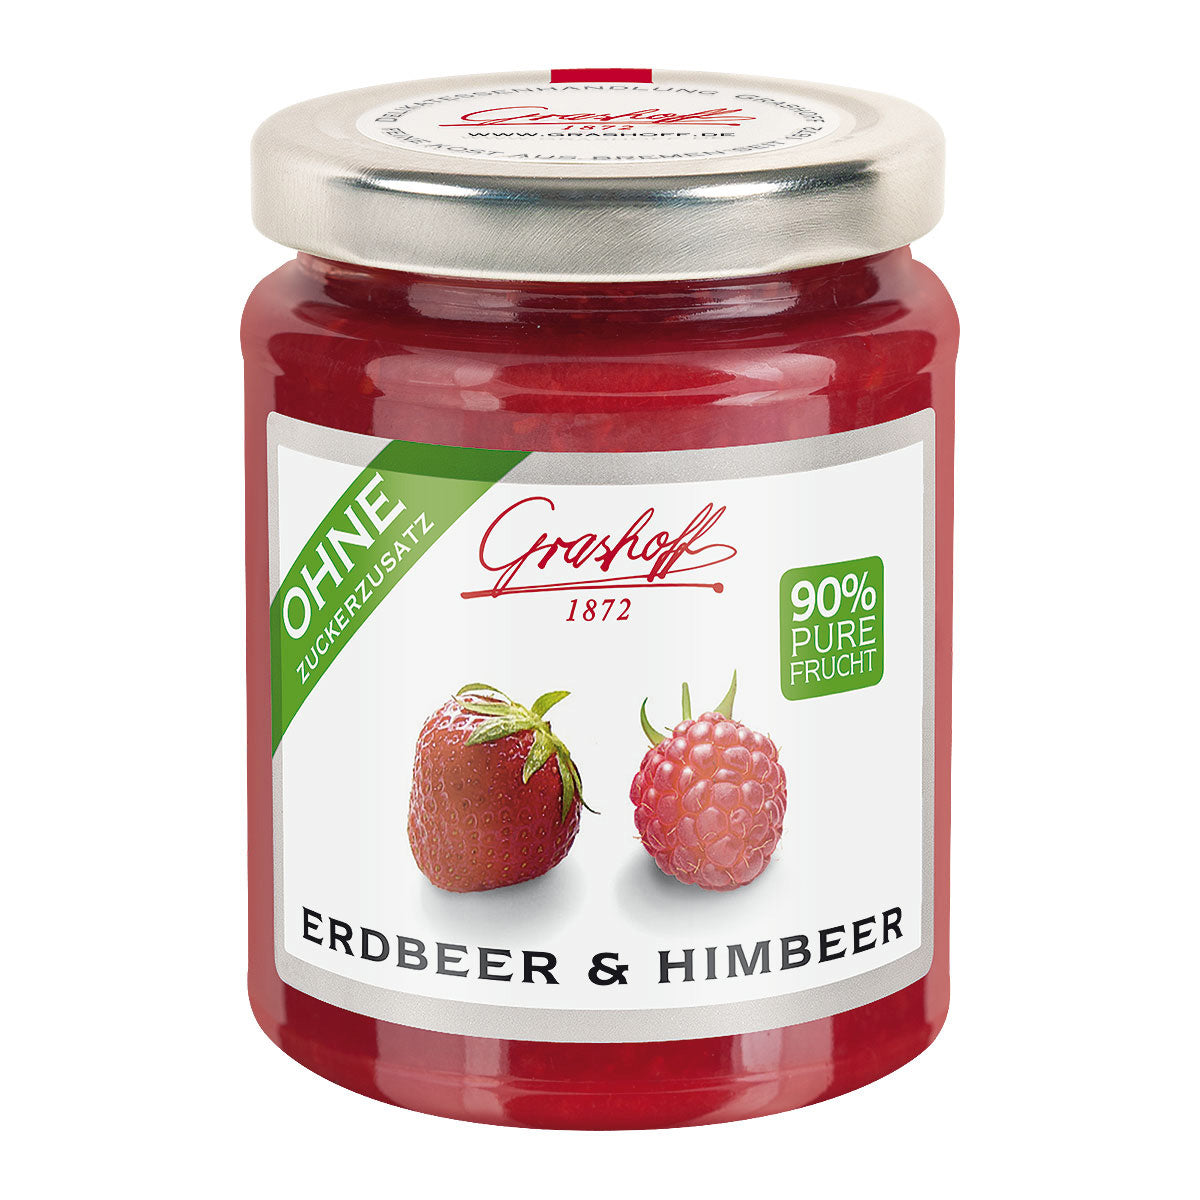 90% Frucht - Erdbeer & Himbeer